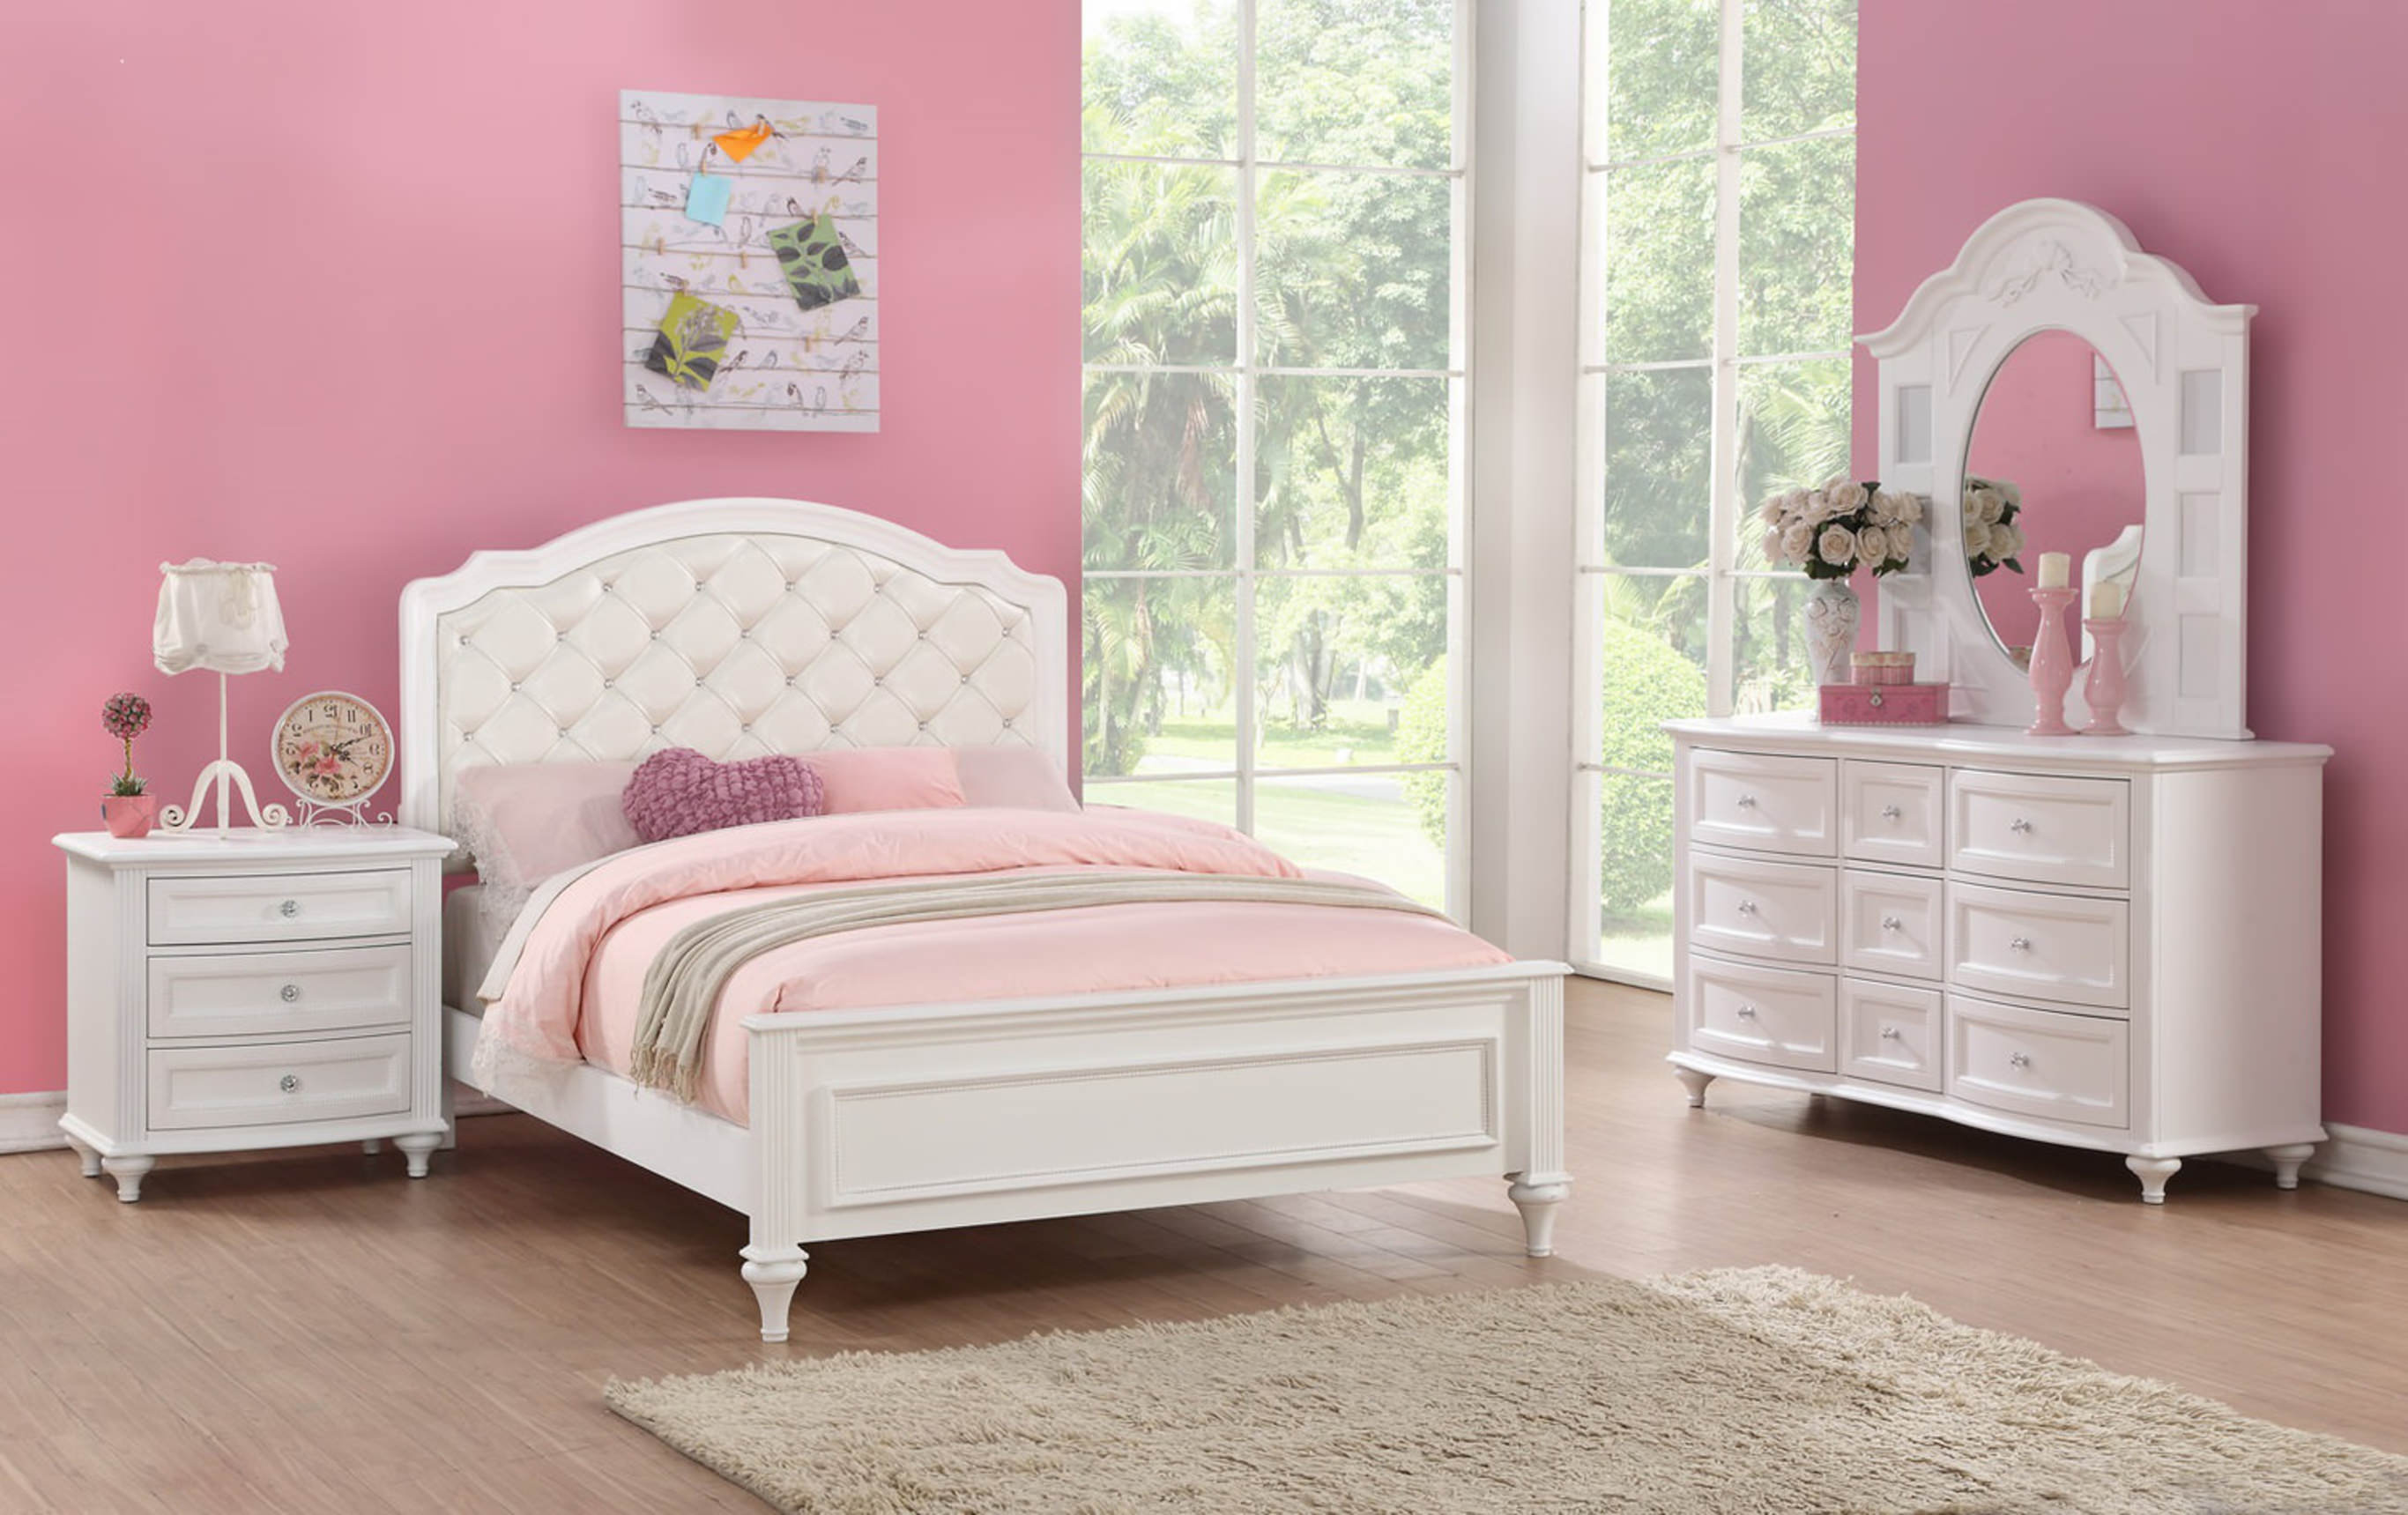 Girl's Bedroom - design blog by HOM Furniture